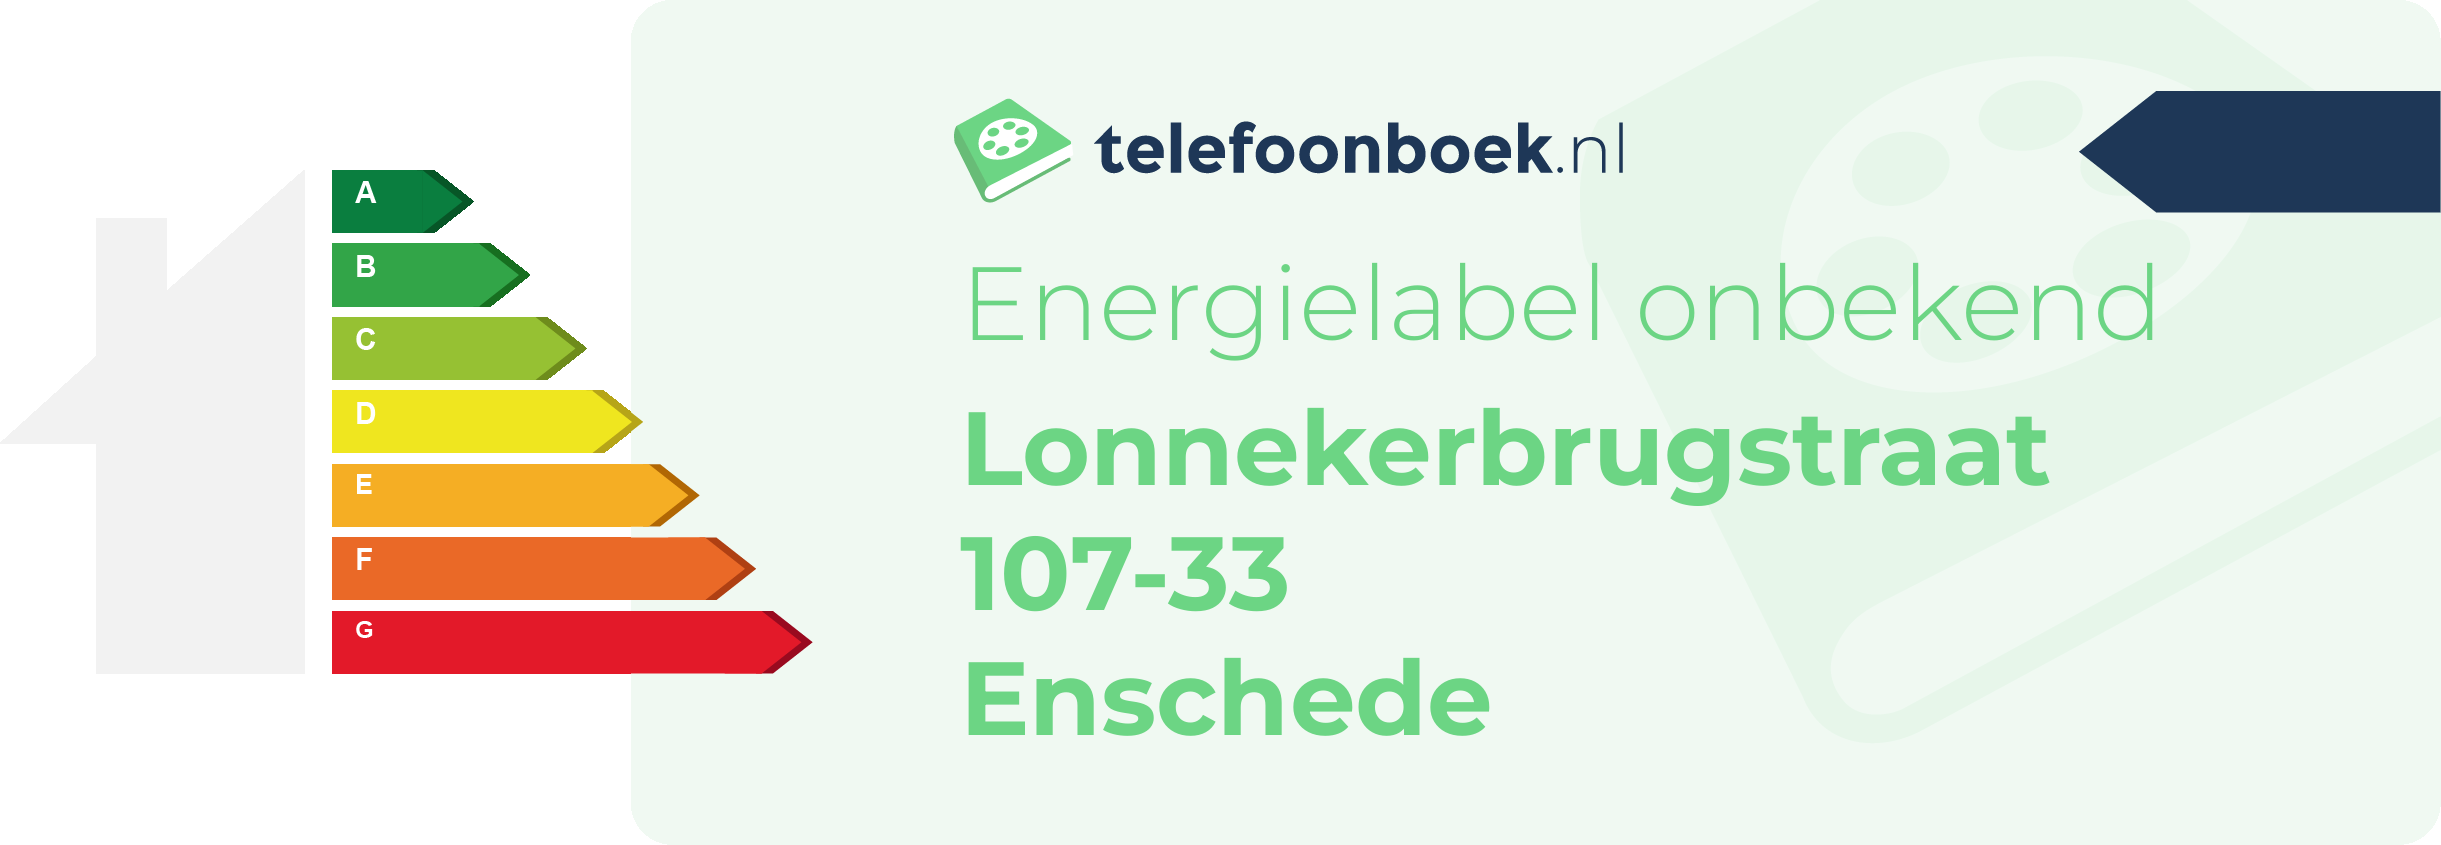 Energielabel Lonnekerbrugstraat 107-33 Enschede